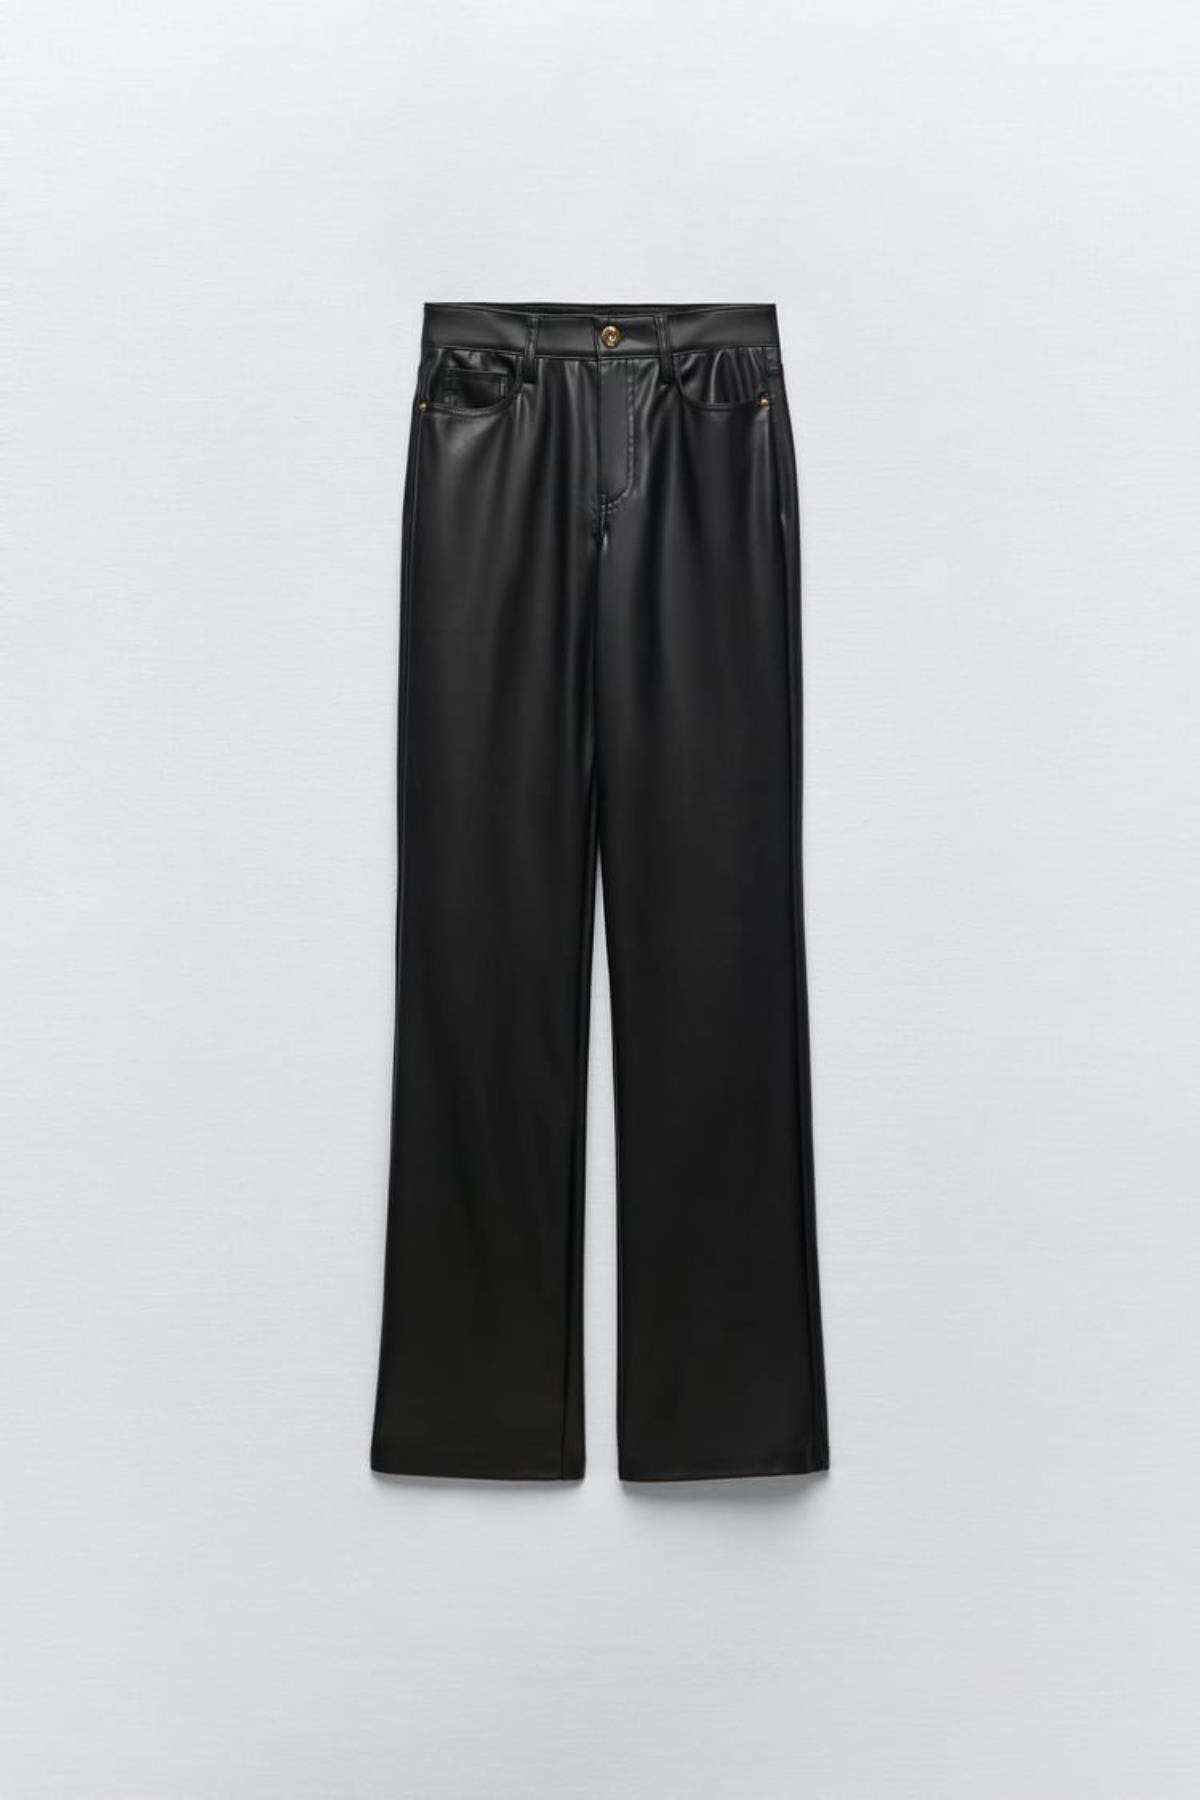 Pantalon de cuero ancho de Zara